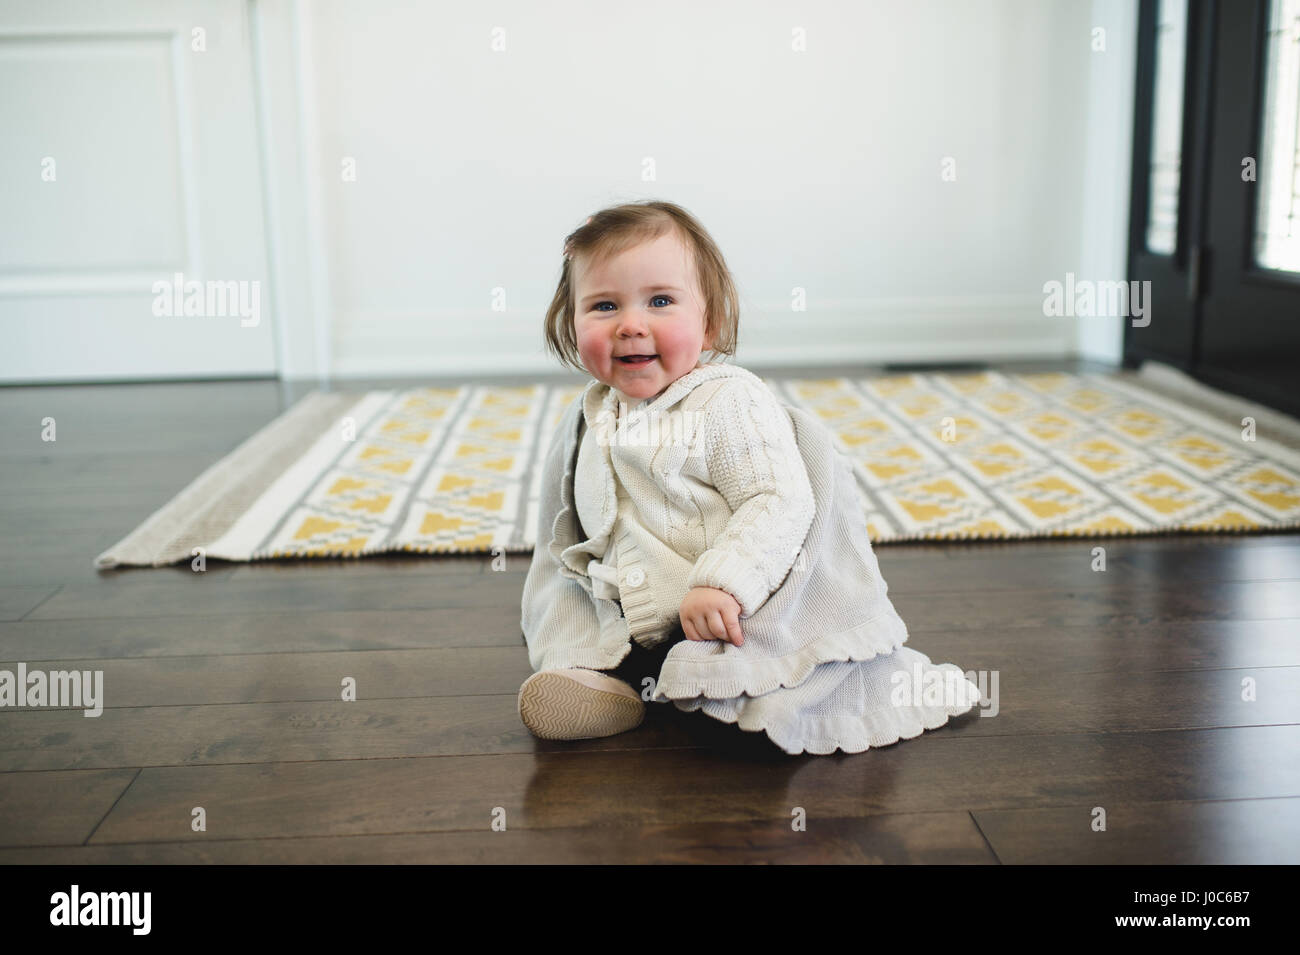 Rosy-cheeked bébé assis sur le plancher smiling Banque D'Images